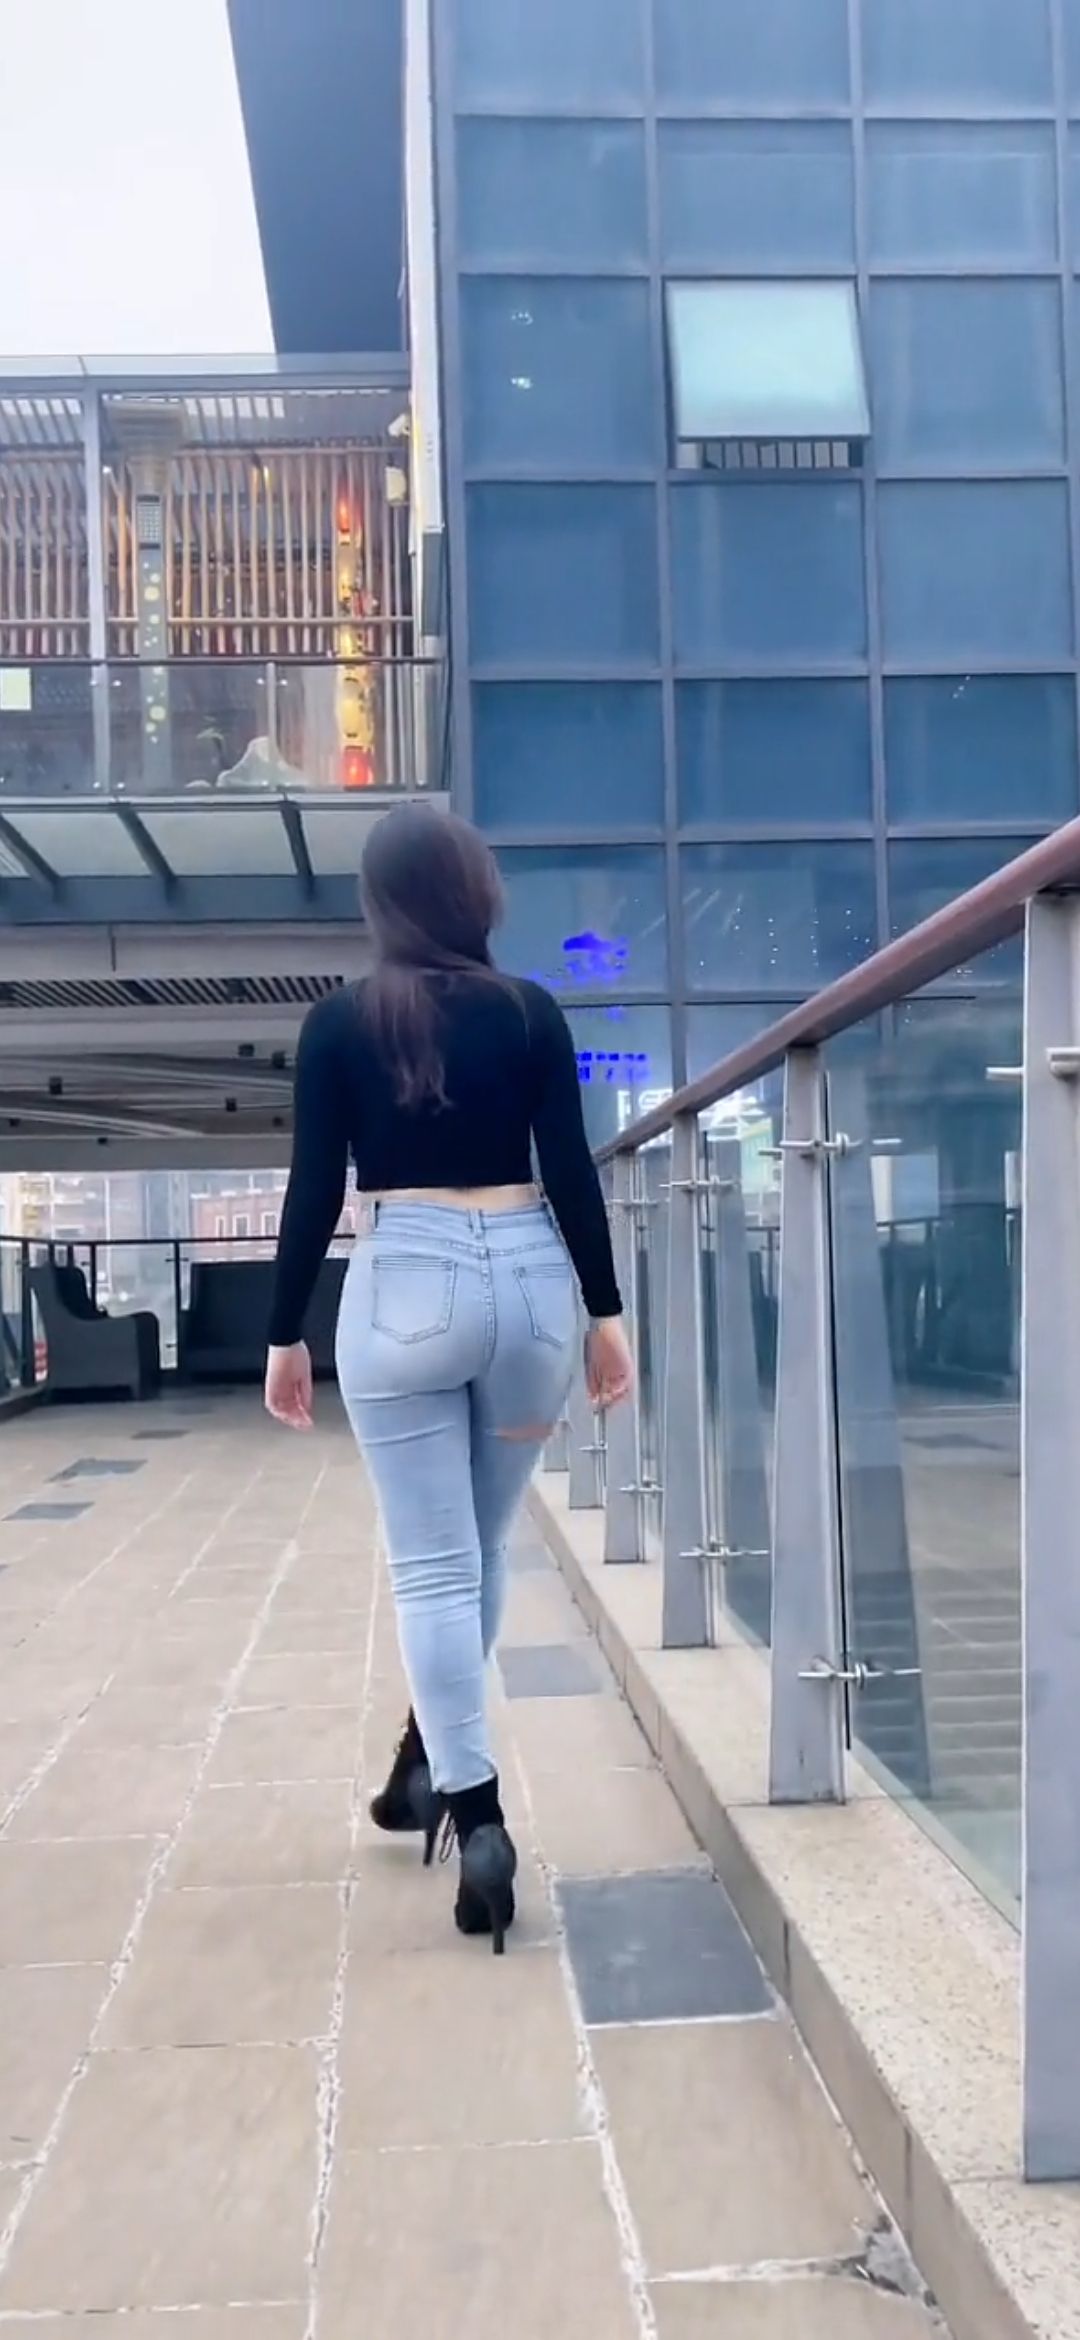 [视频]在国外旅行时碰到一位漂亮的牛仔裤美女